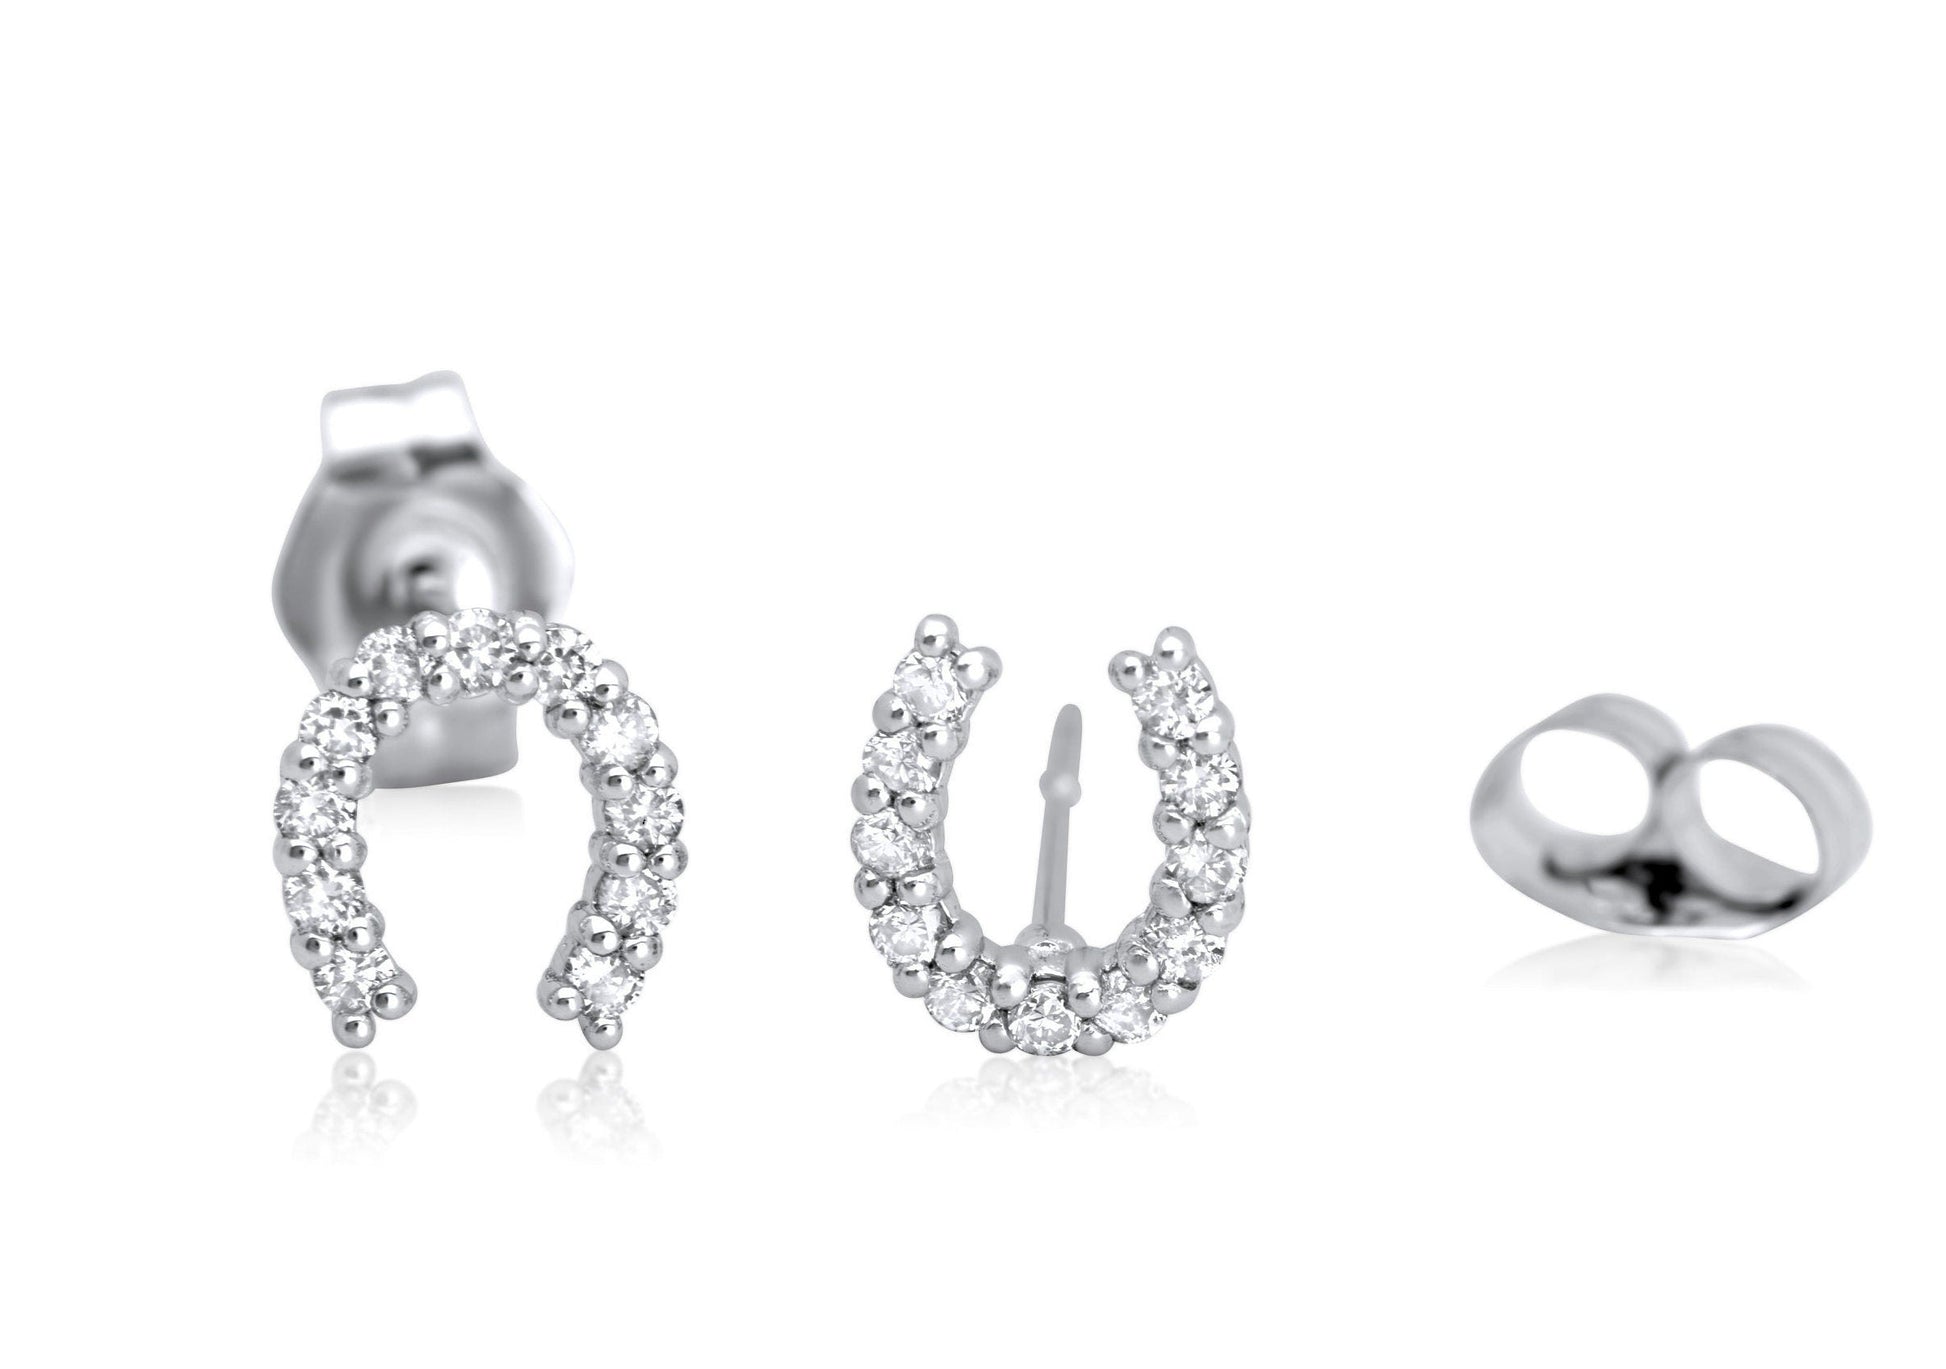 14k horseshoe shaped earrings